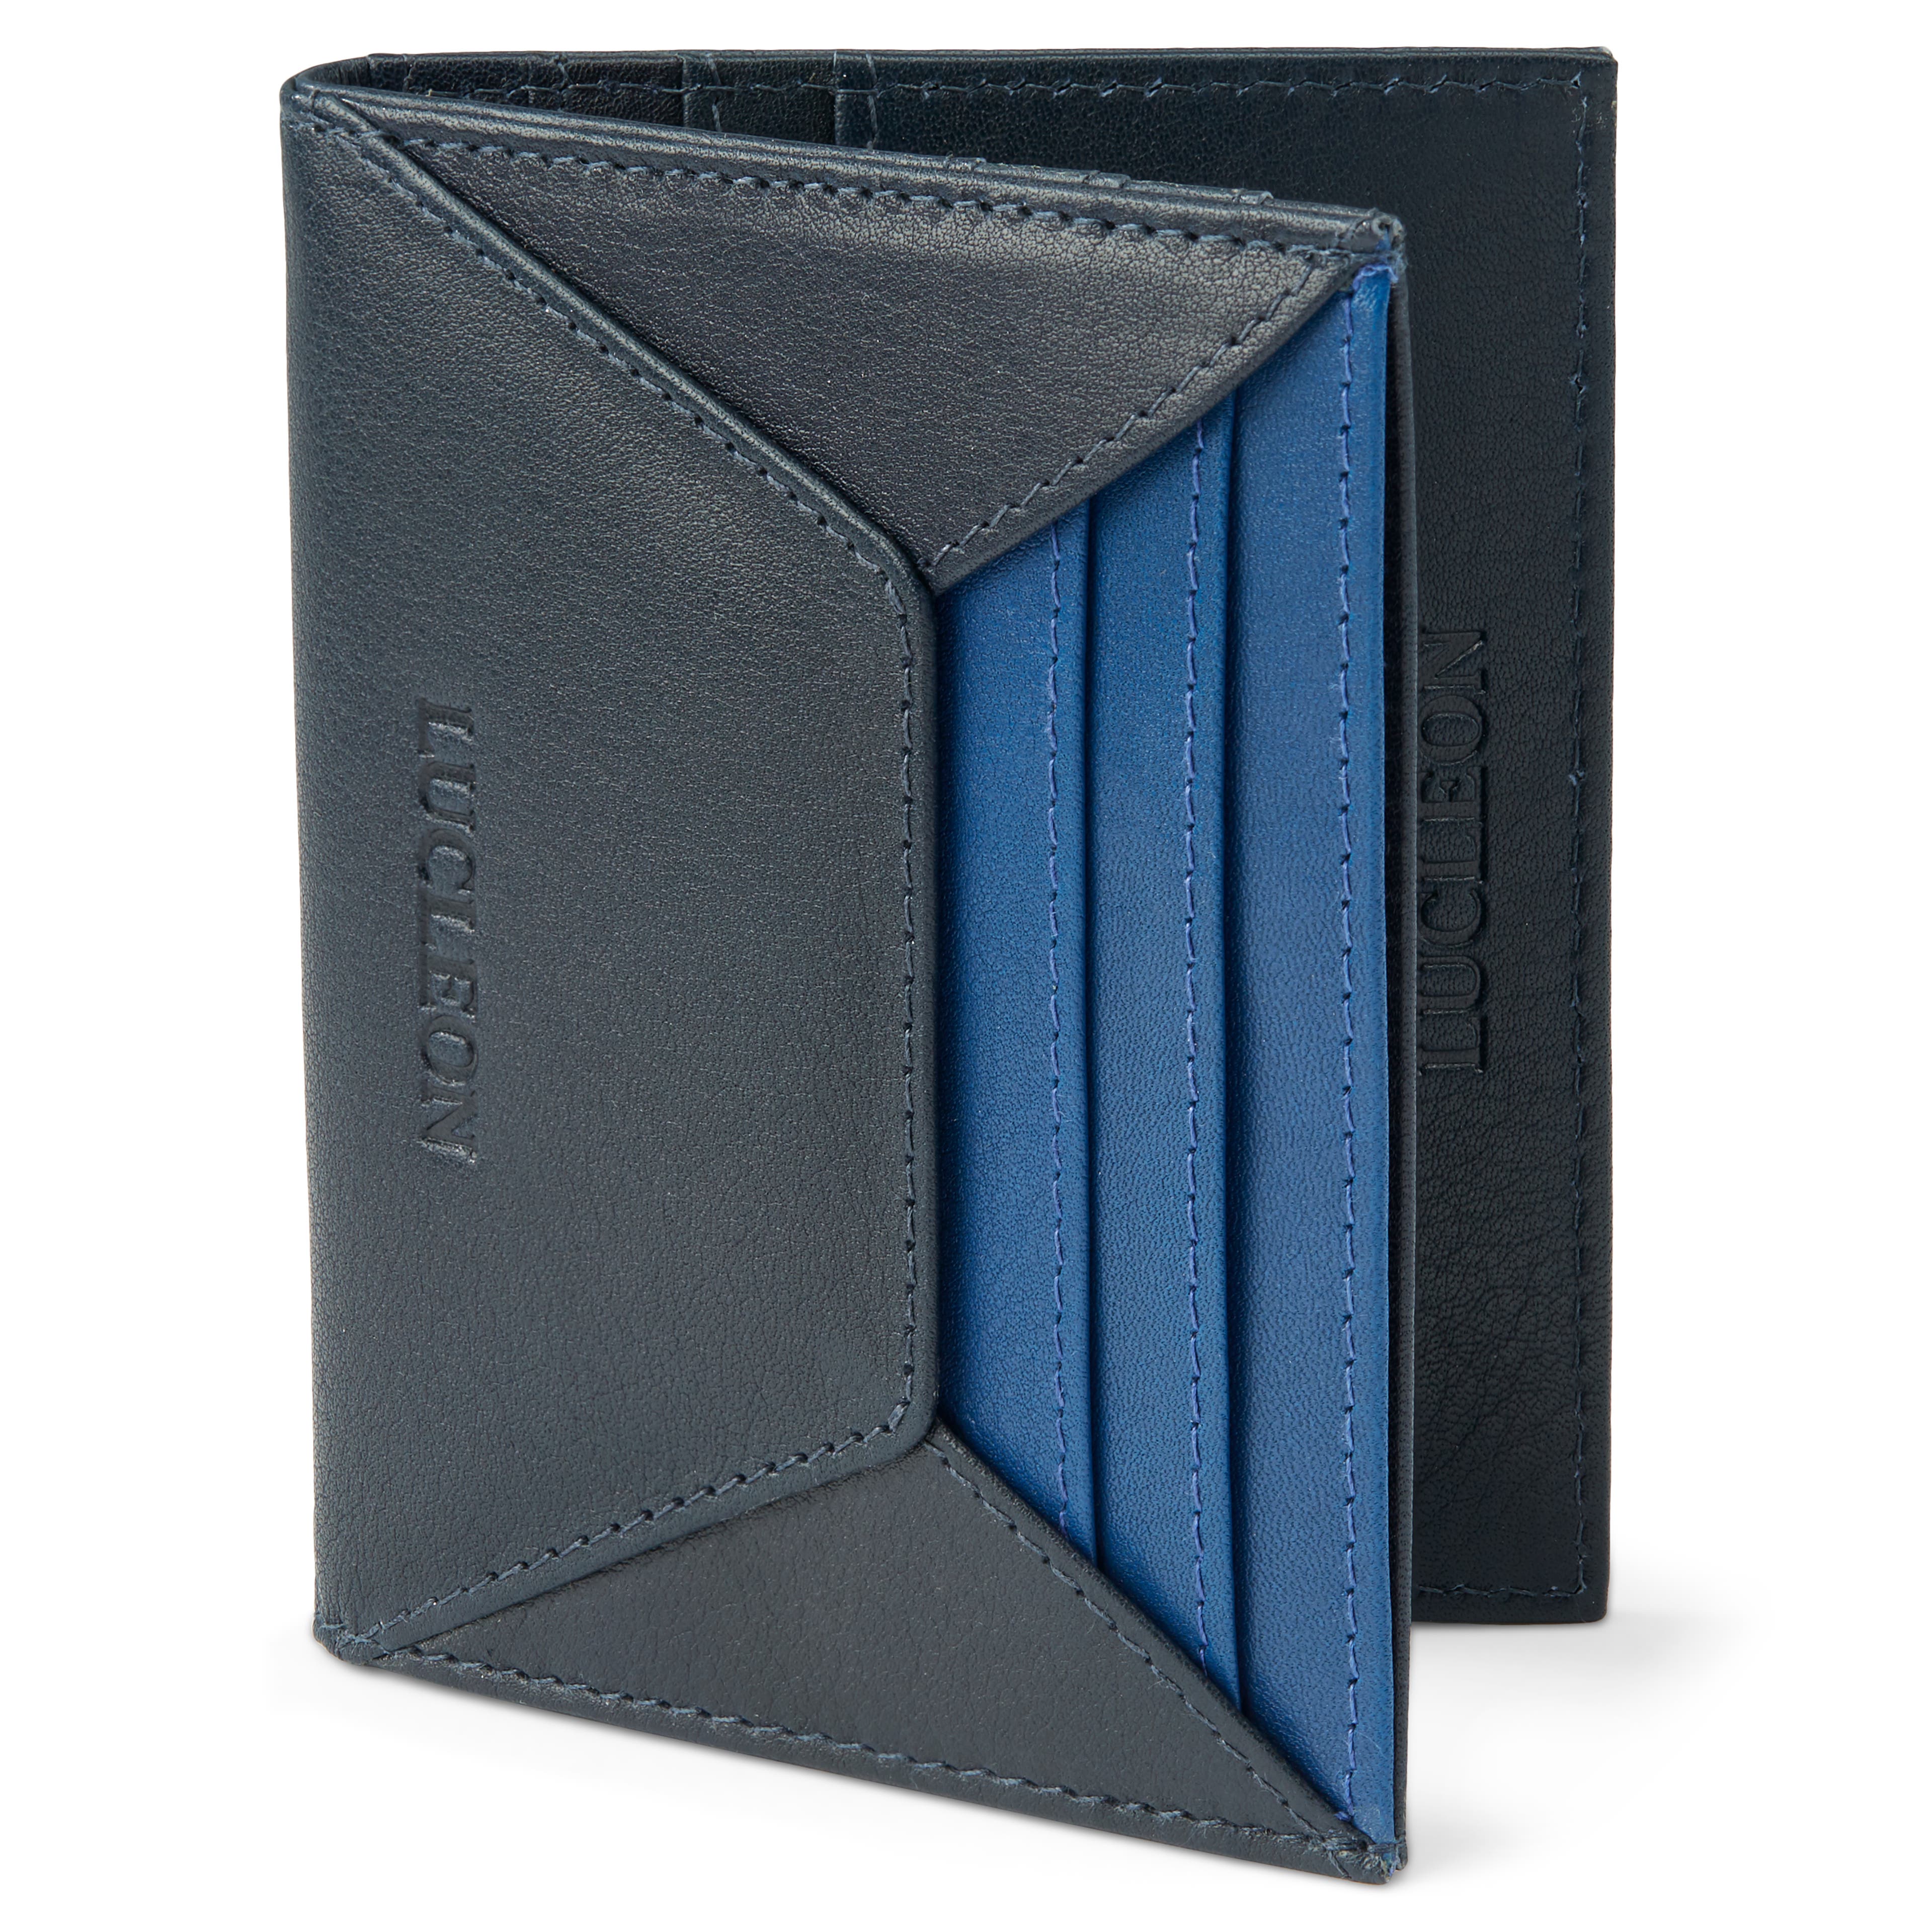 Leonardo Men's Billfold Wallet